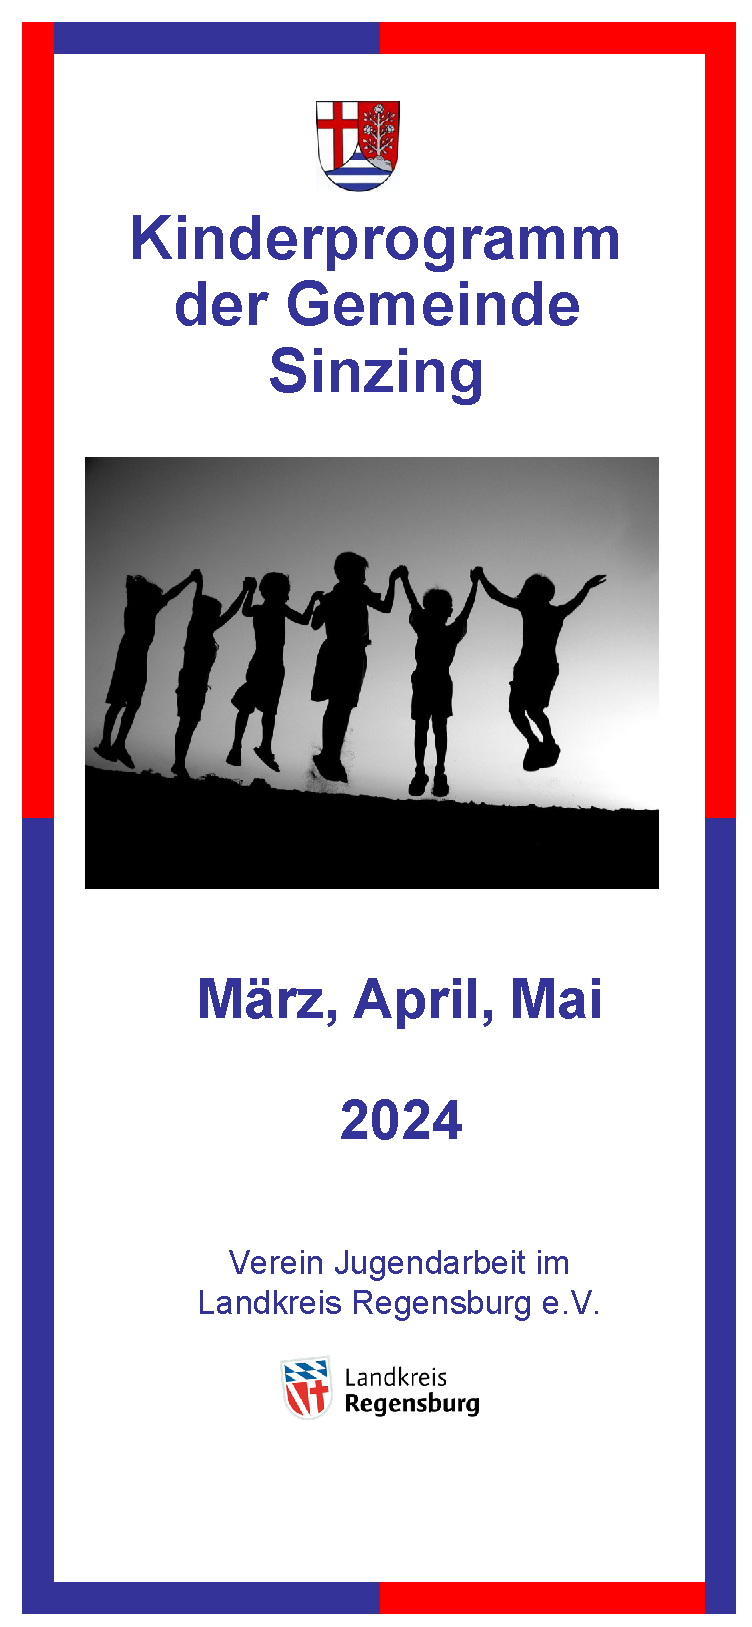 März, April, Mai 2024